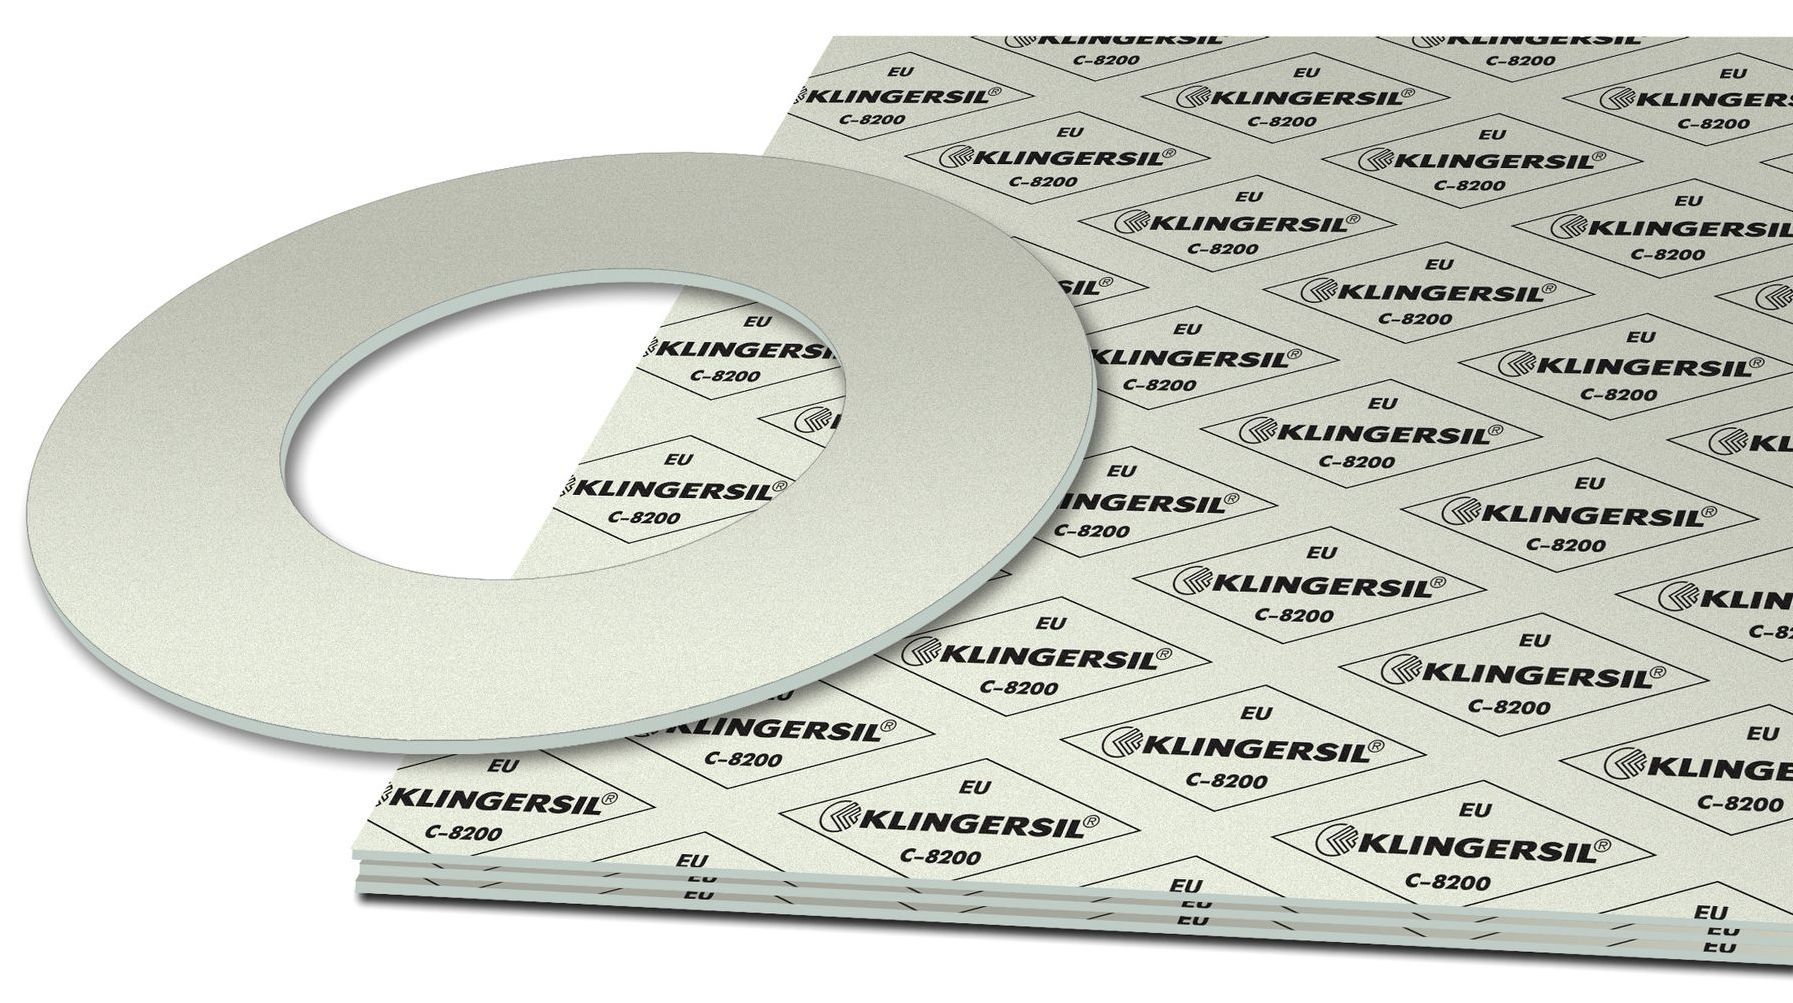 KLINGERSIL C-8200 compressed fiber sheet material with cut gasket